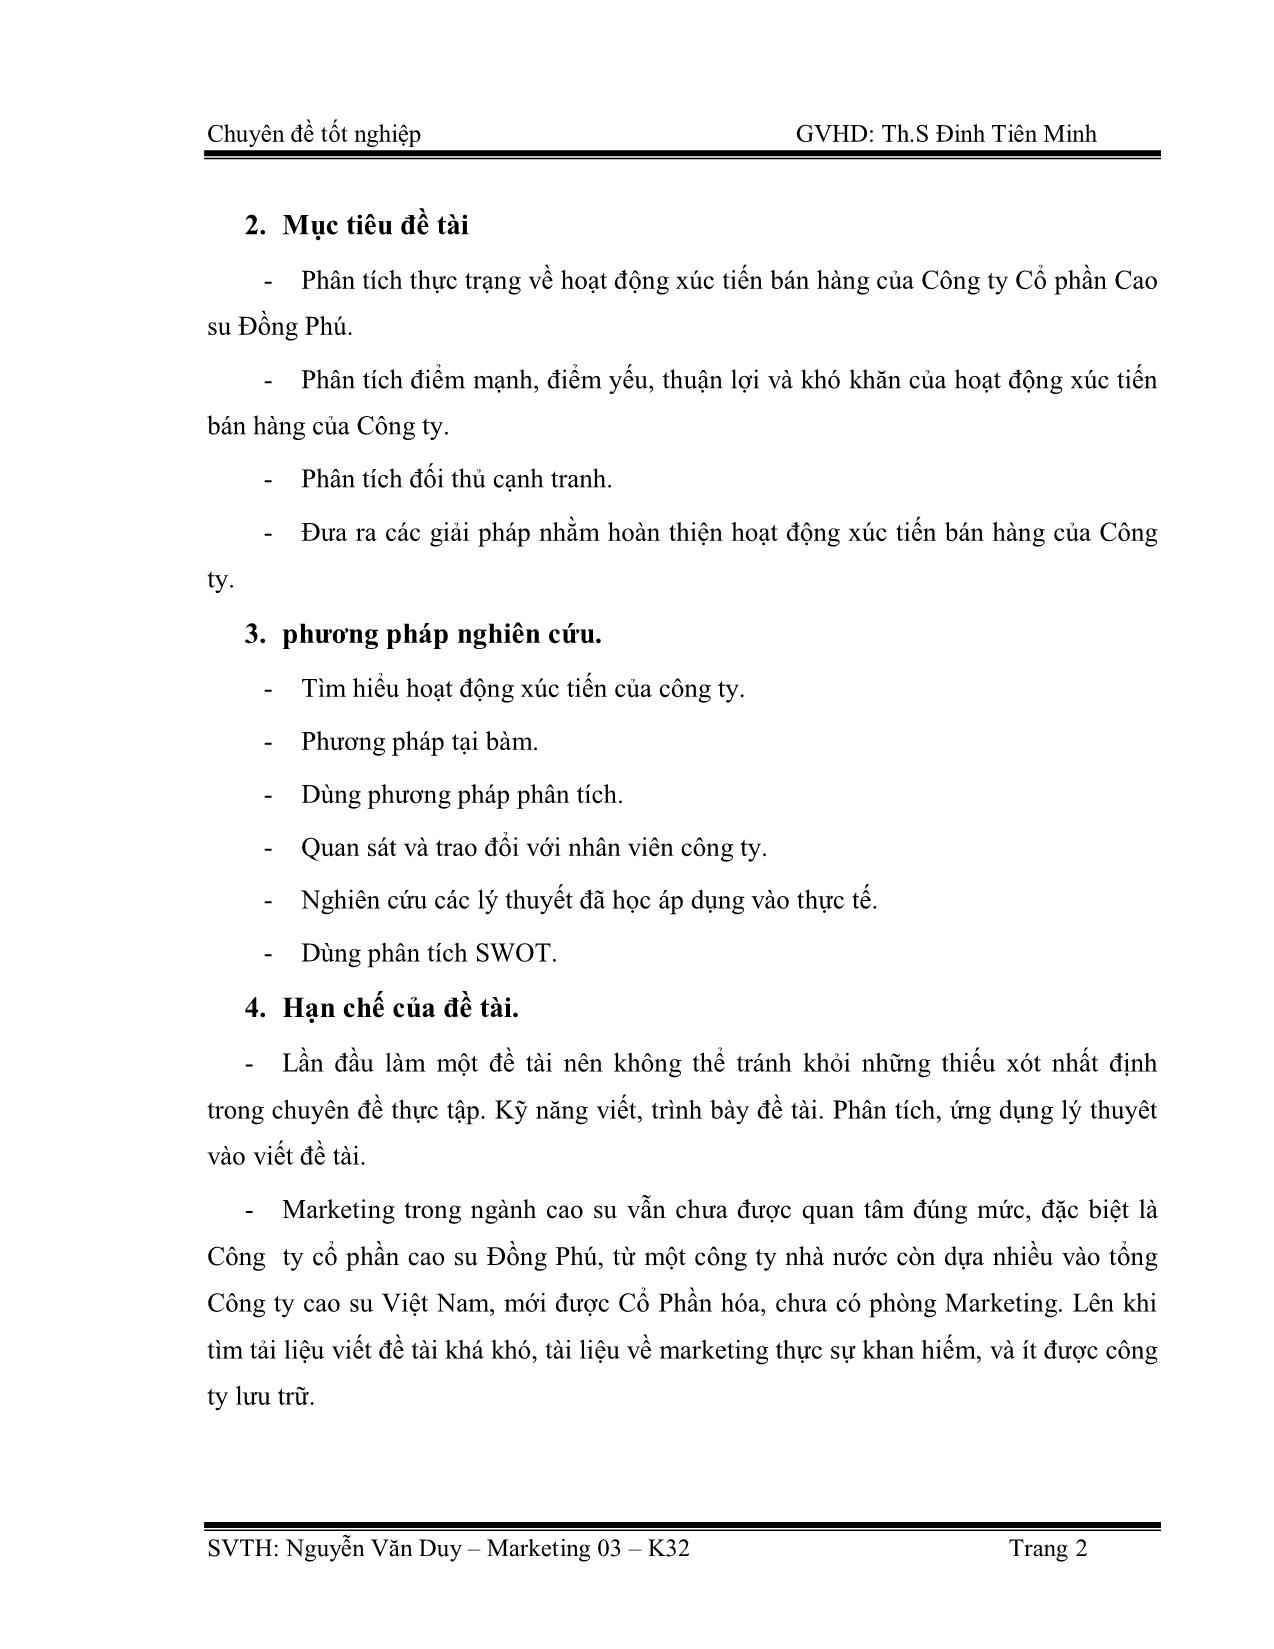 Chuyên đề Thực trạng về hoạt động xúc tiến bán hàng của công ty cổ phần cao su Đồng Phú trang 3